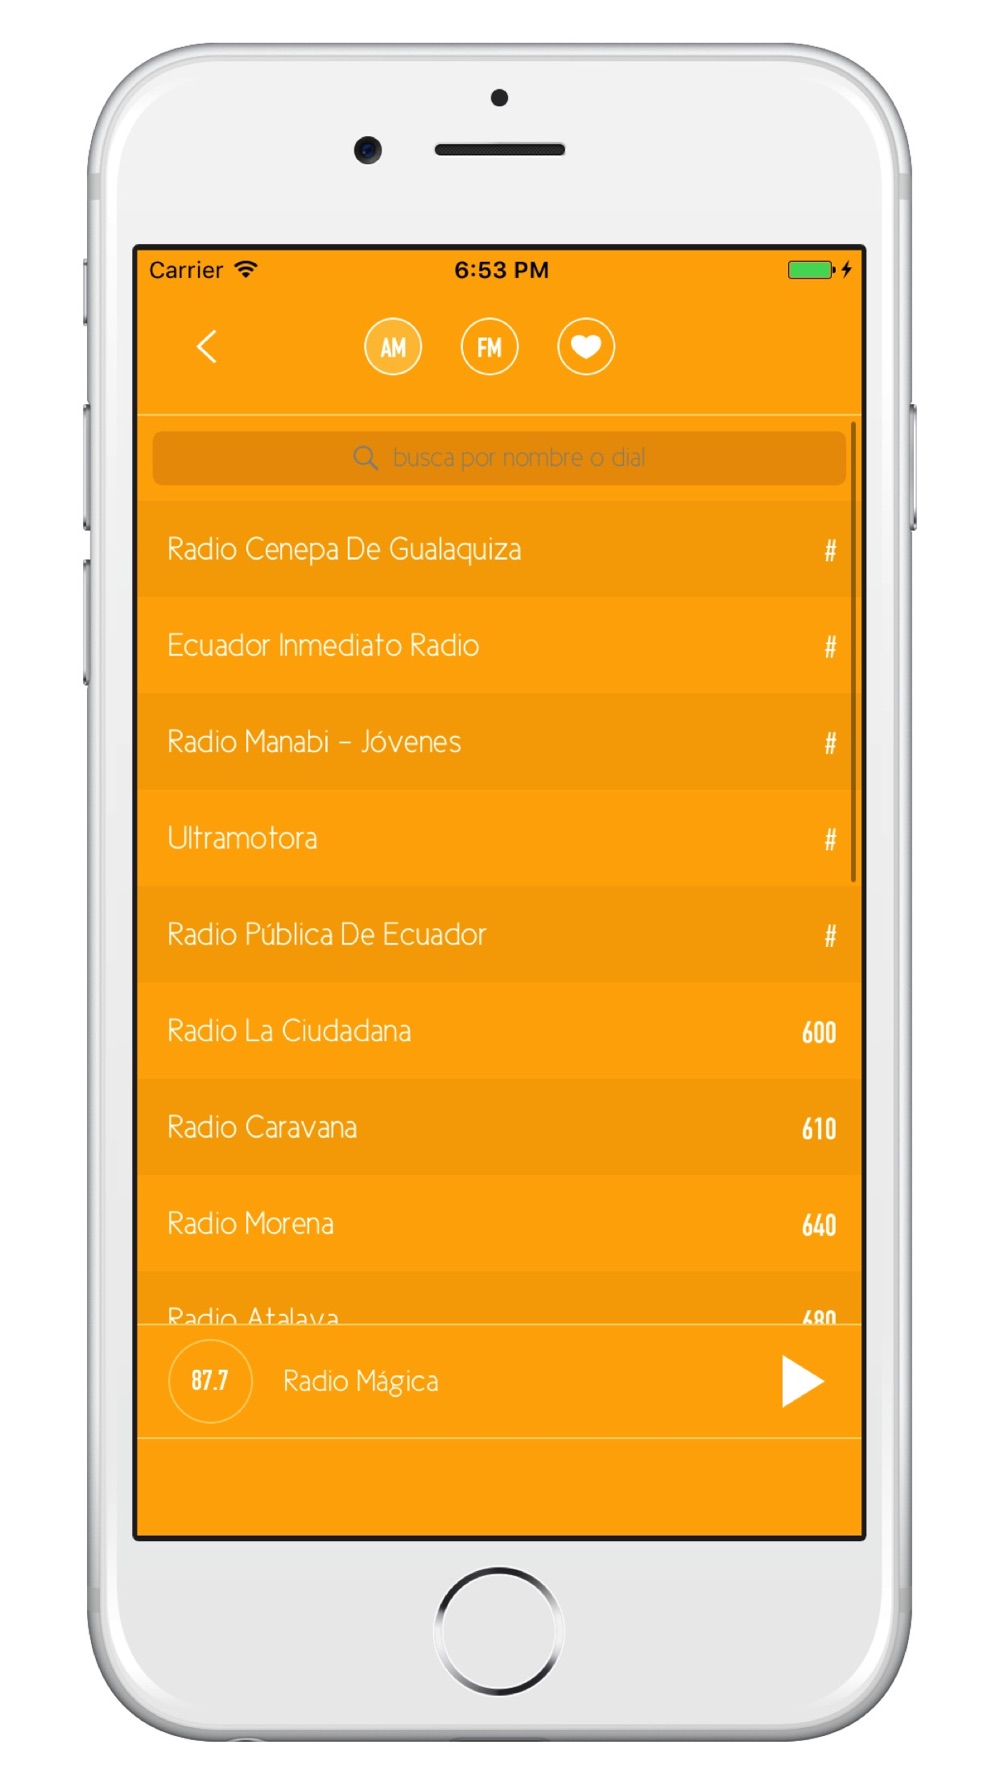 Radio Ecuador - AM/FM Free Download App for iPhone - STEPrimo.com